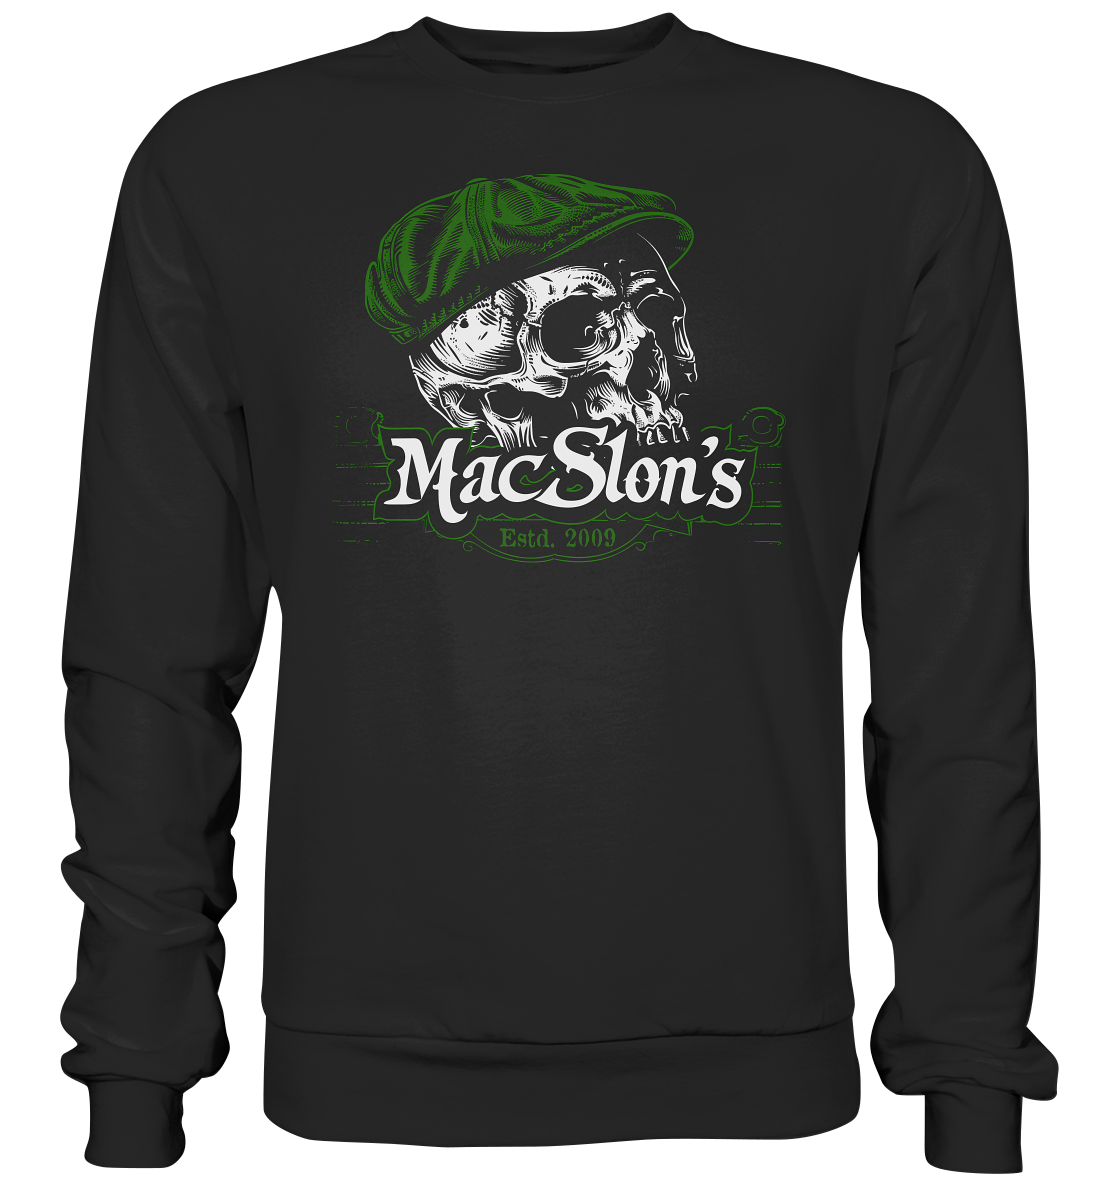 MacSlon's "Estd. 2009 / Flatcap-Skull V" - Premium Sweatshirt